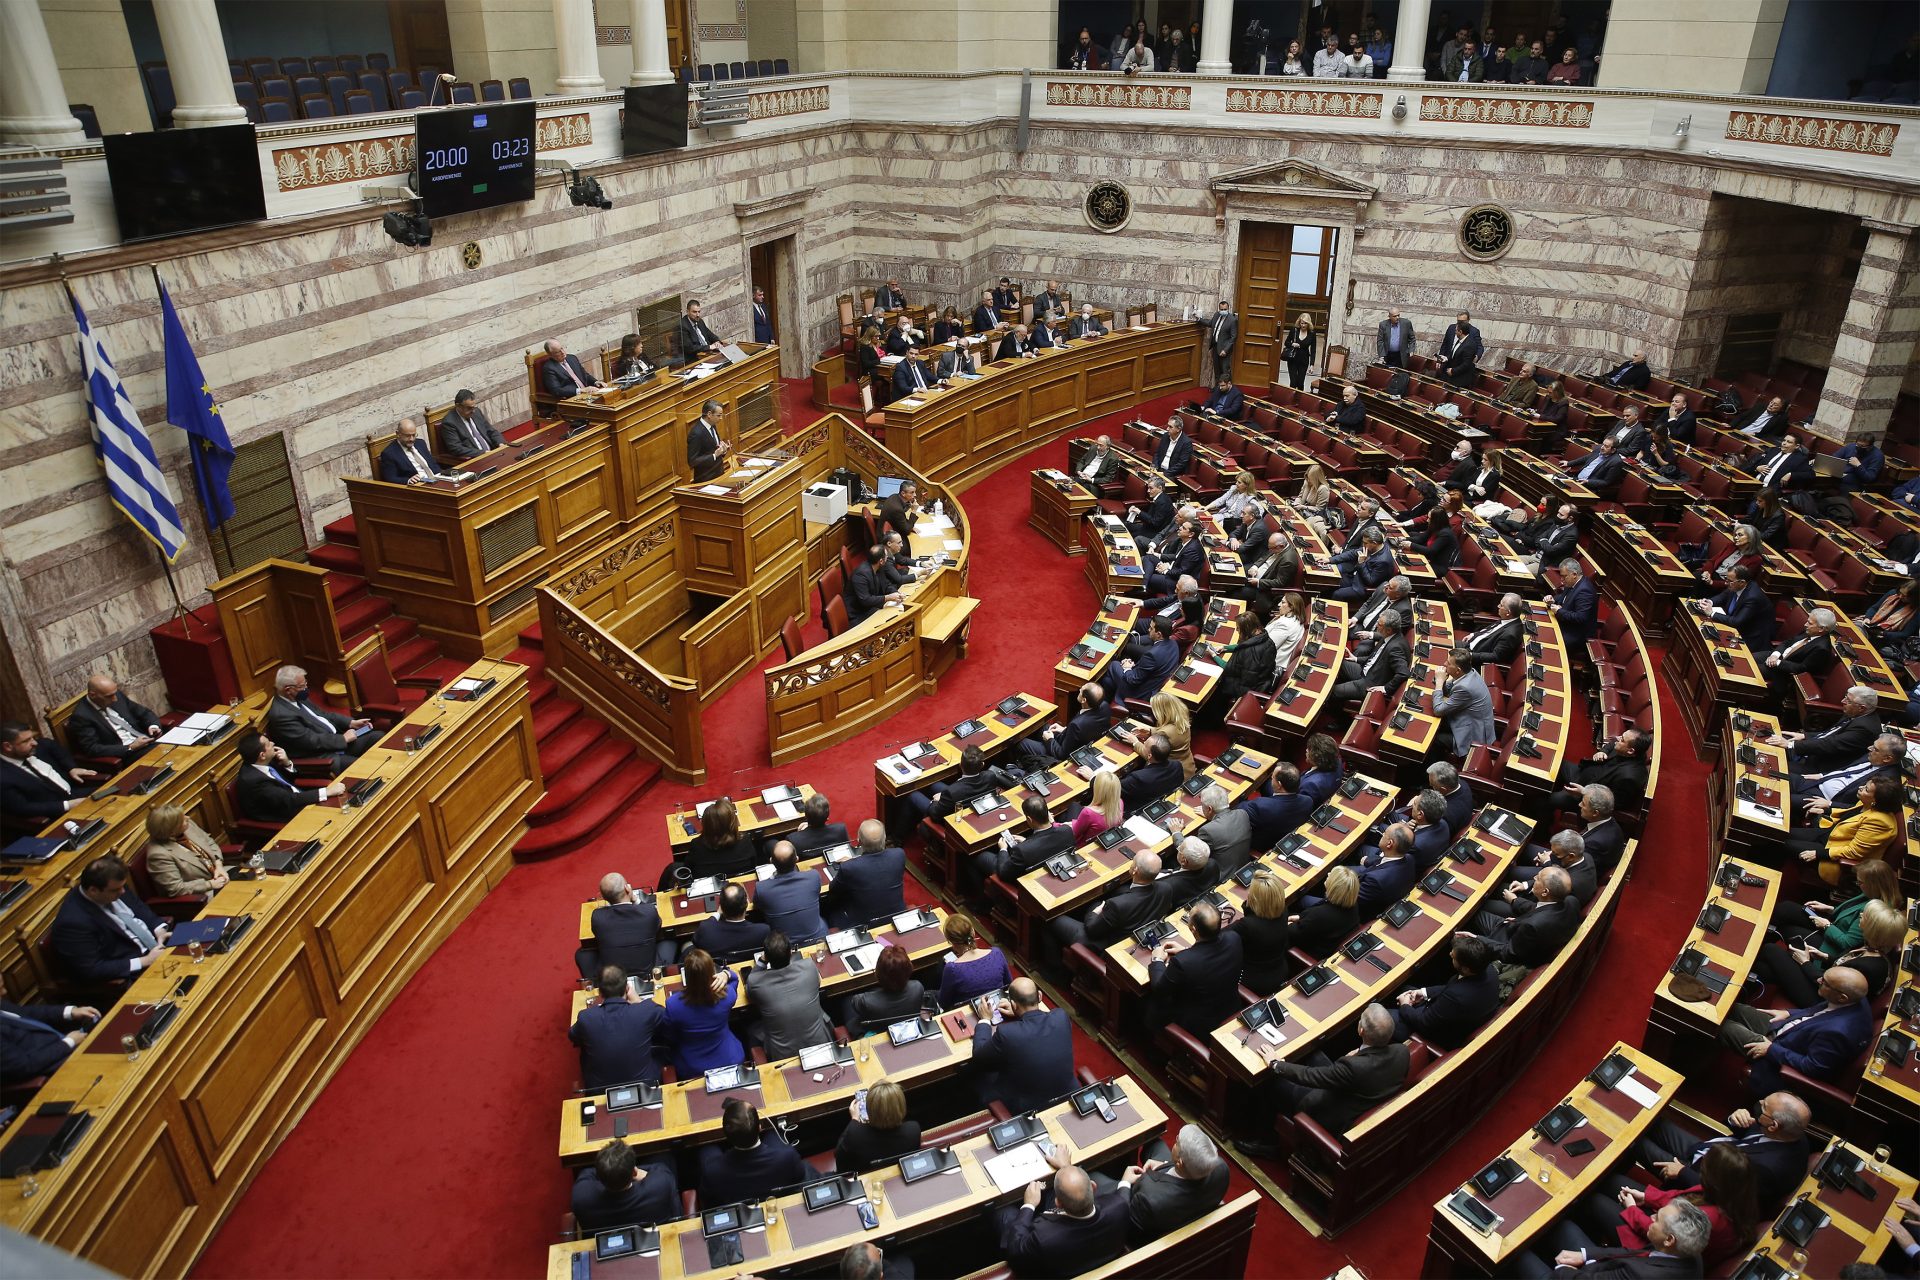 El primer ministro griego sigue sin arrojar luz sobre el escándalo de escuchas a políticos